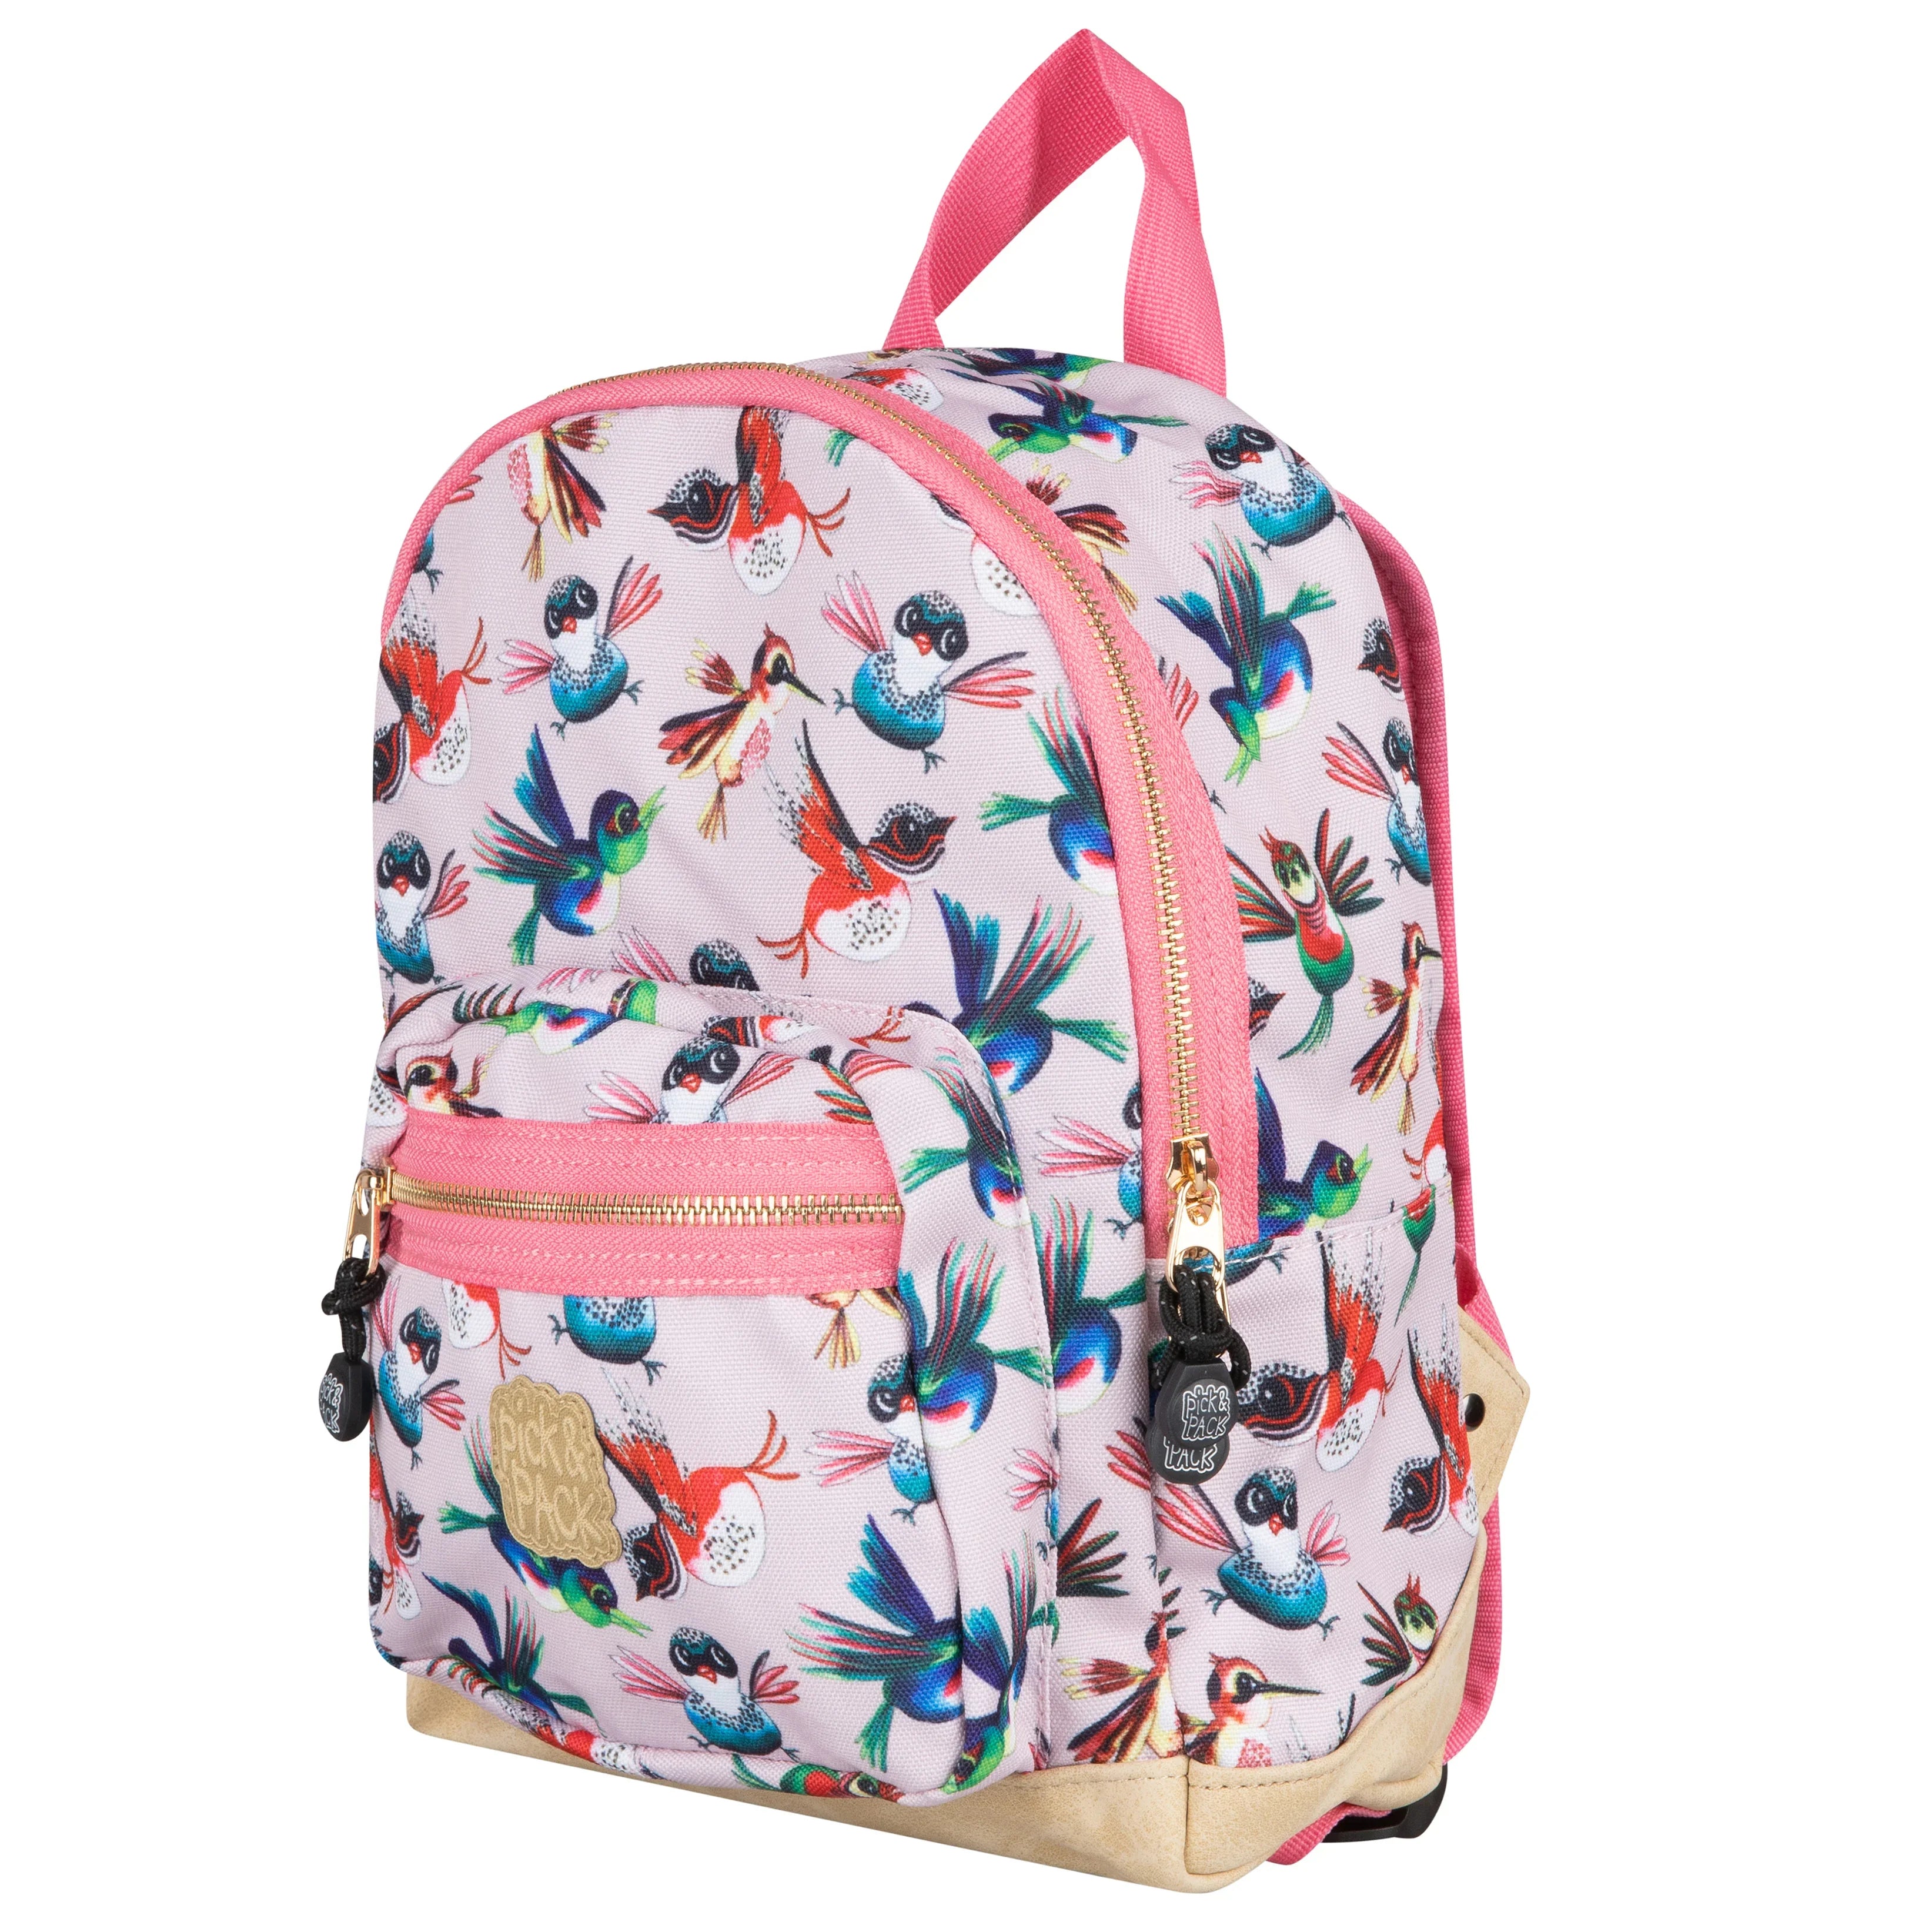 Pick & Pack Birds children's backpack 31 cm - Soft Pink